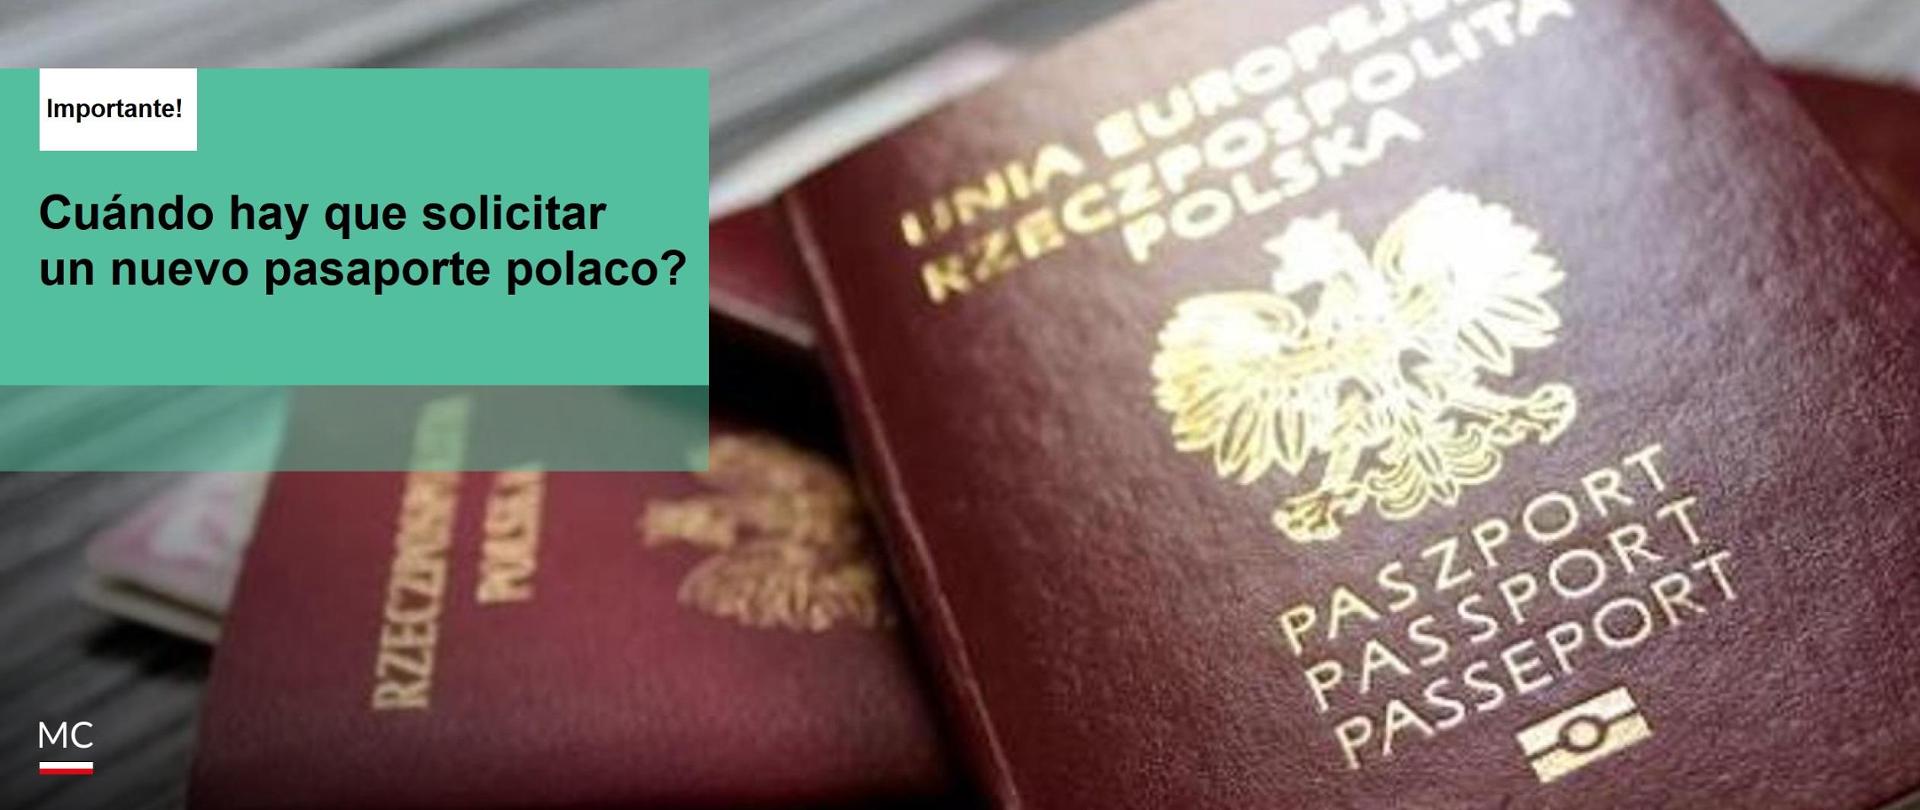 ¡Se acercan las vacaciones: verifica la validez de tu pasaporte!
